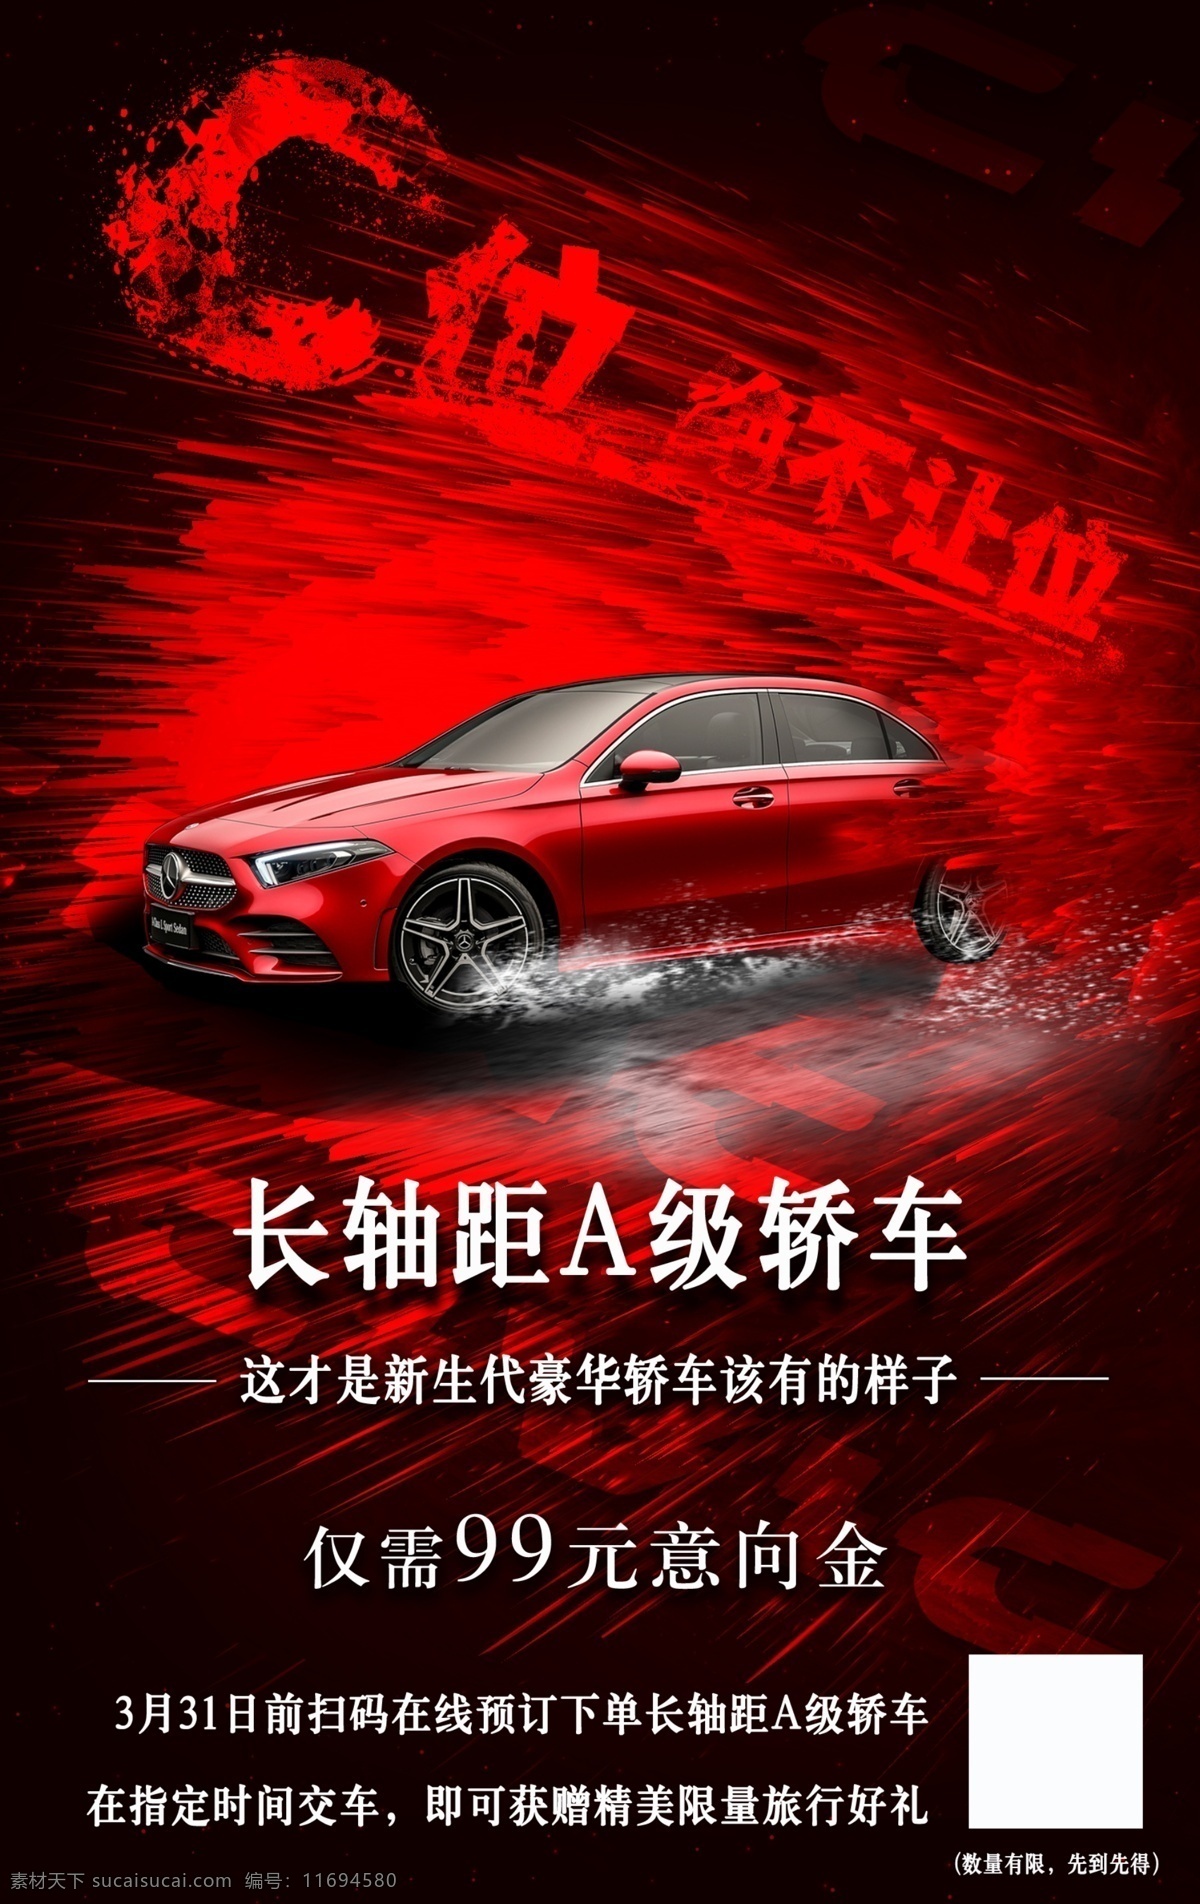 五色 奔驰 汽车 宣传海报 炫酷 宣传 海报 活动 奔驰宣传